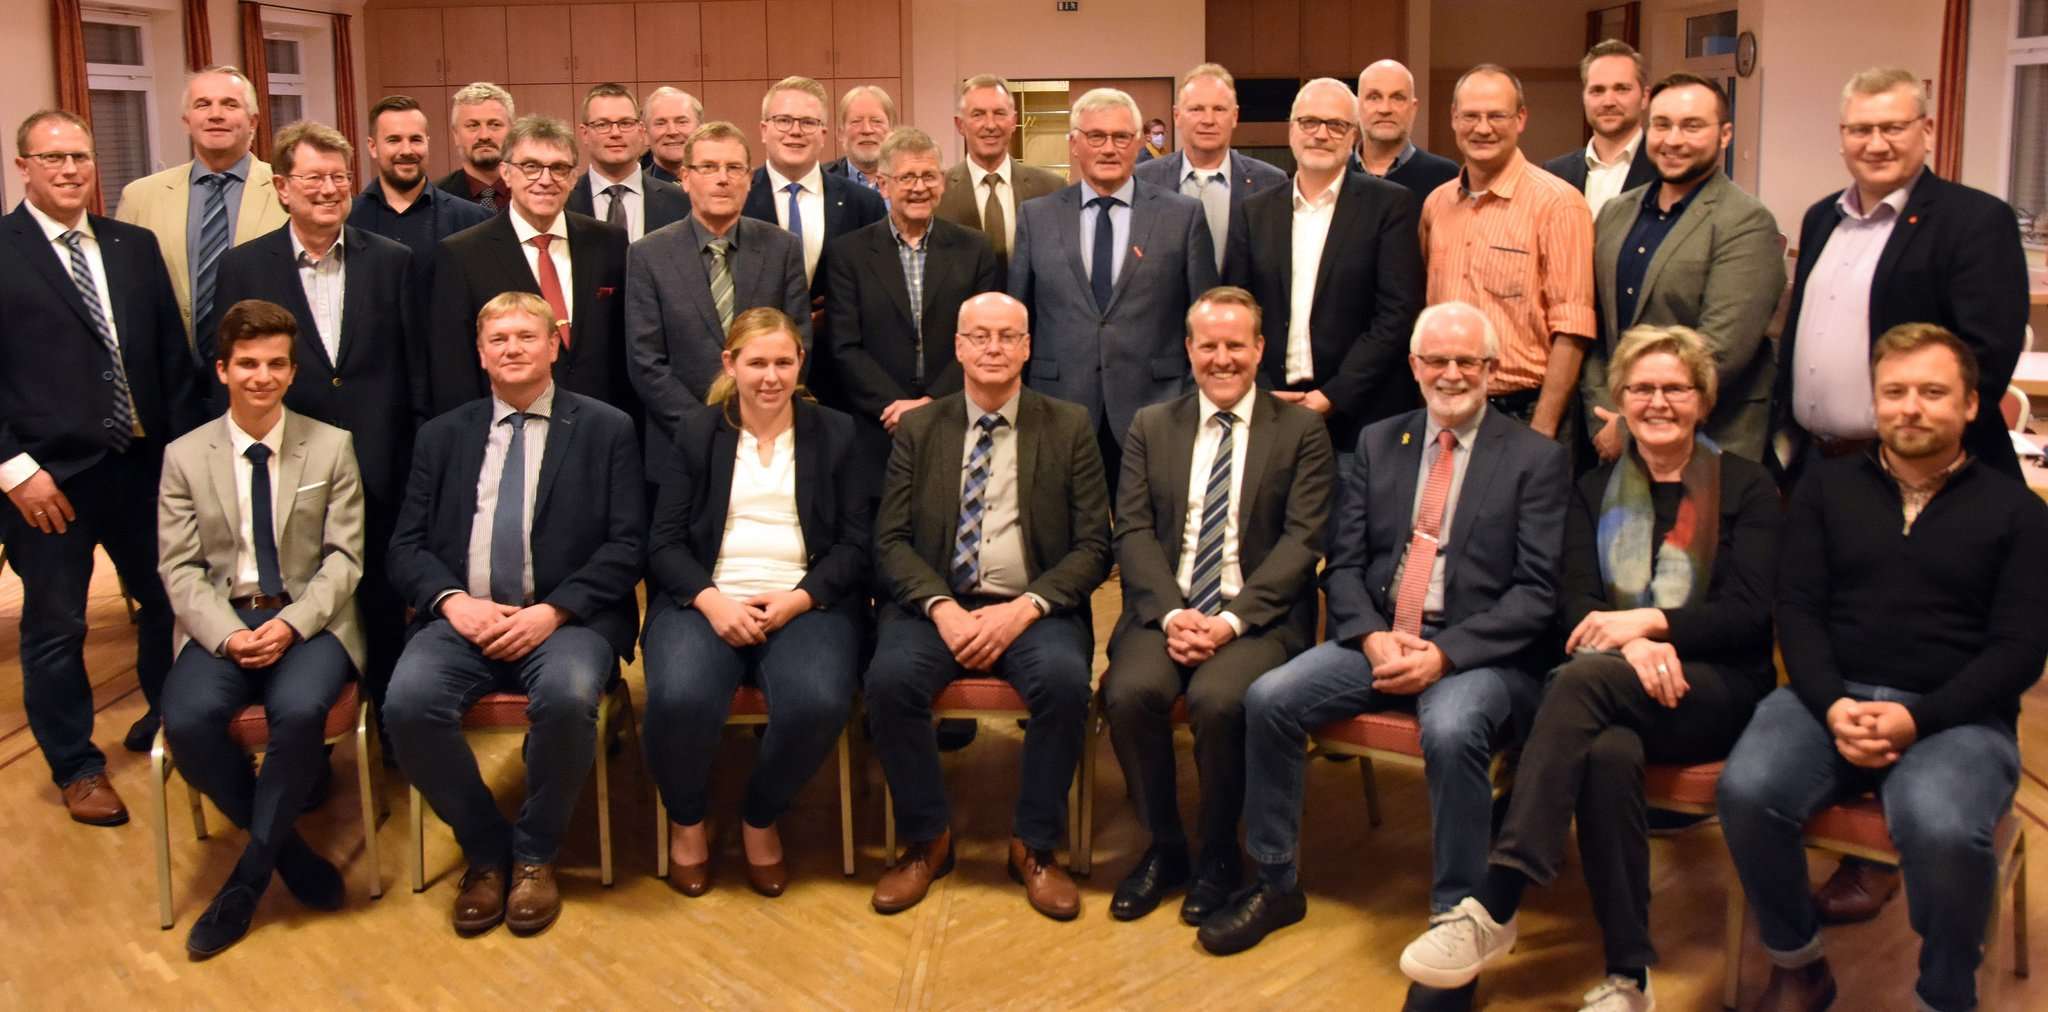 Der neue Rat der Samtgemeinde Sittensen mit Samtgemeindebürgermeister Jörn Keller (Vierter von rechts sitzend) als stimmberechtigtes Mitglied.